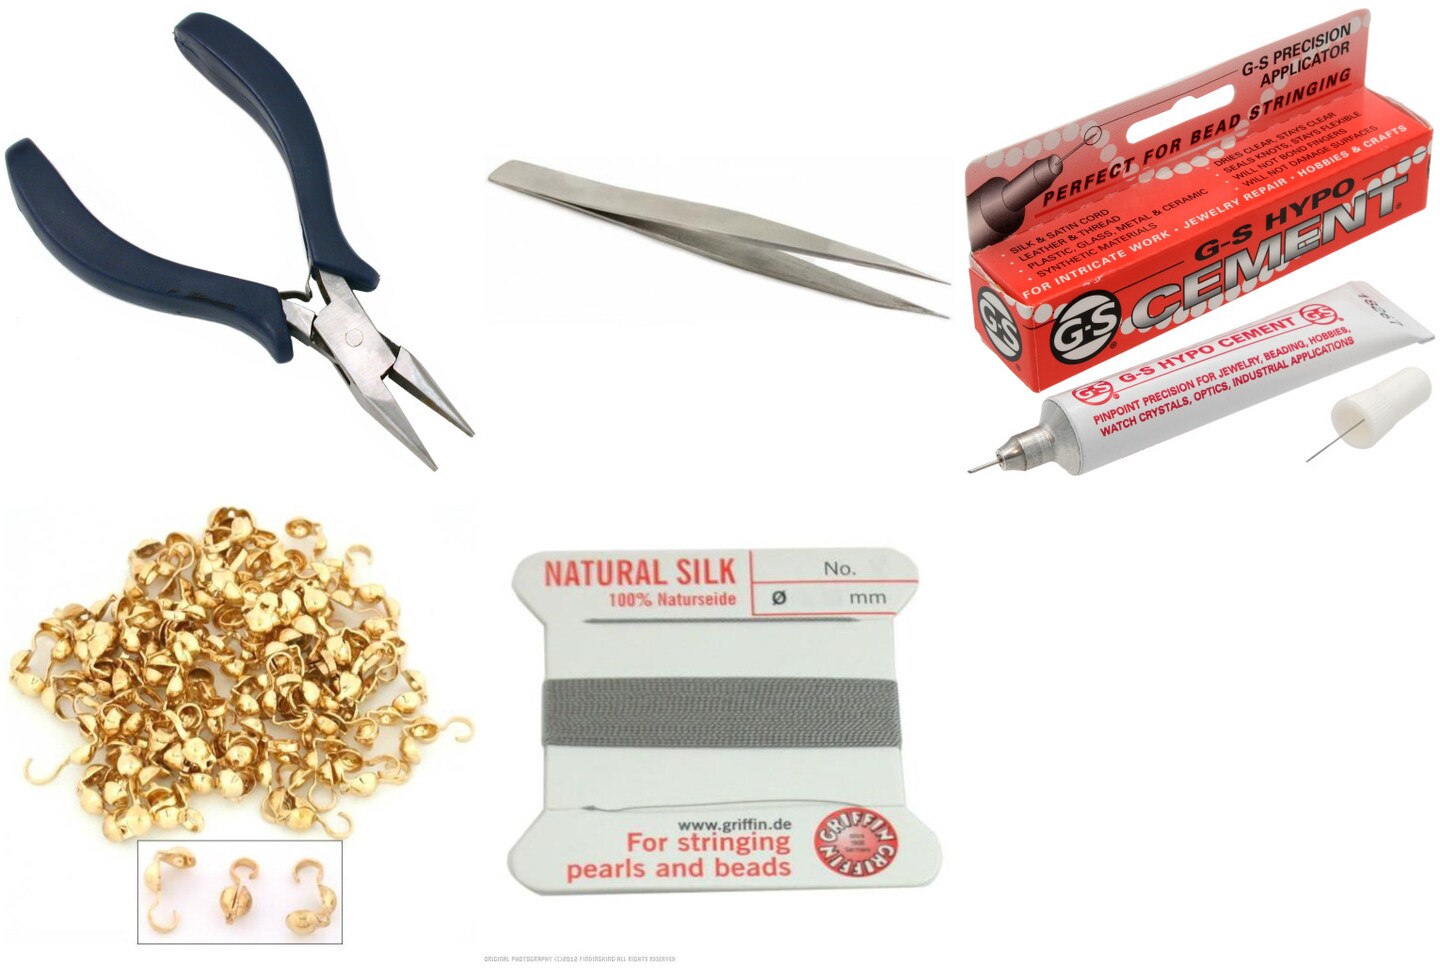 Bead Tip Kit - Pliers, Tweezers, Cement, 100 Bead tips &#x26; Grey Bead Cord #3